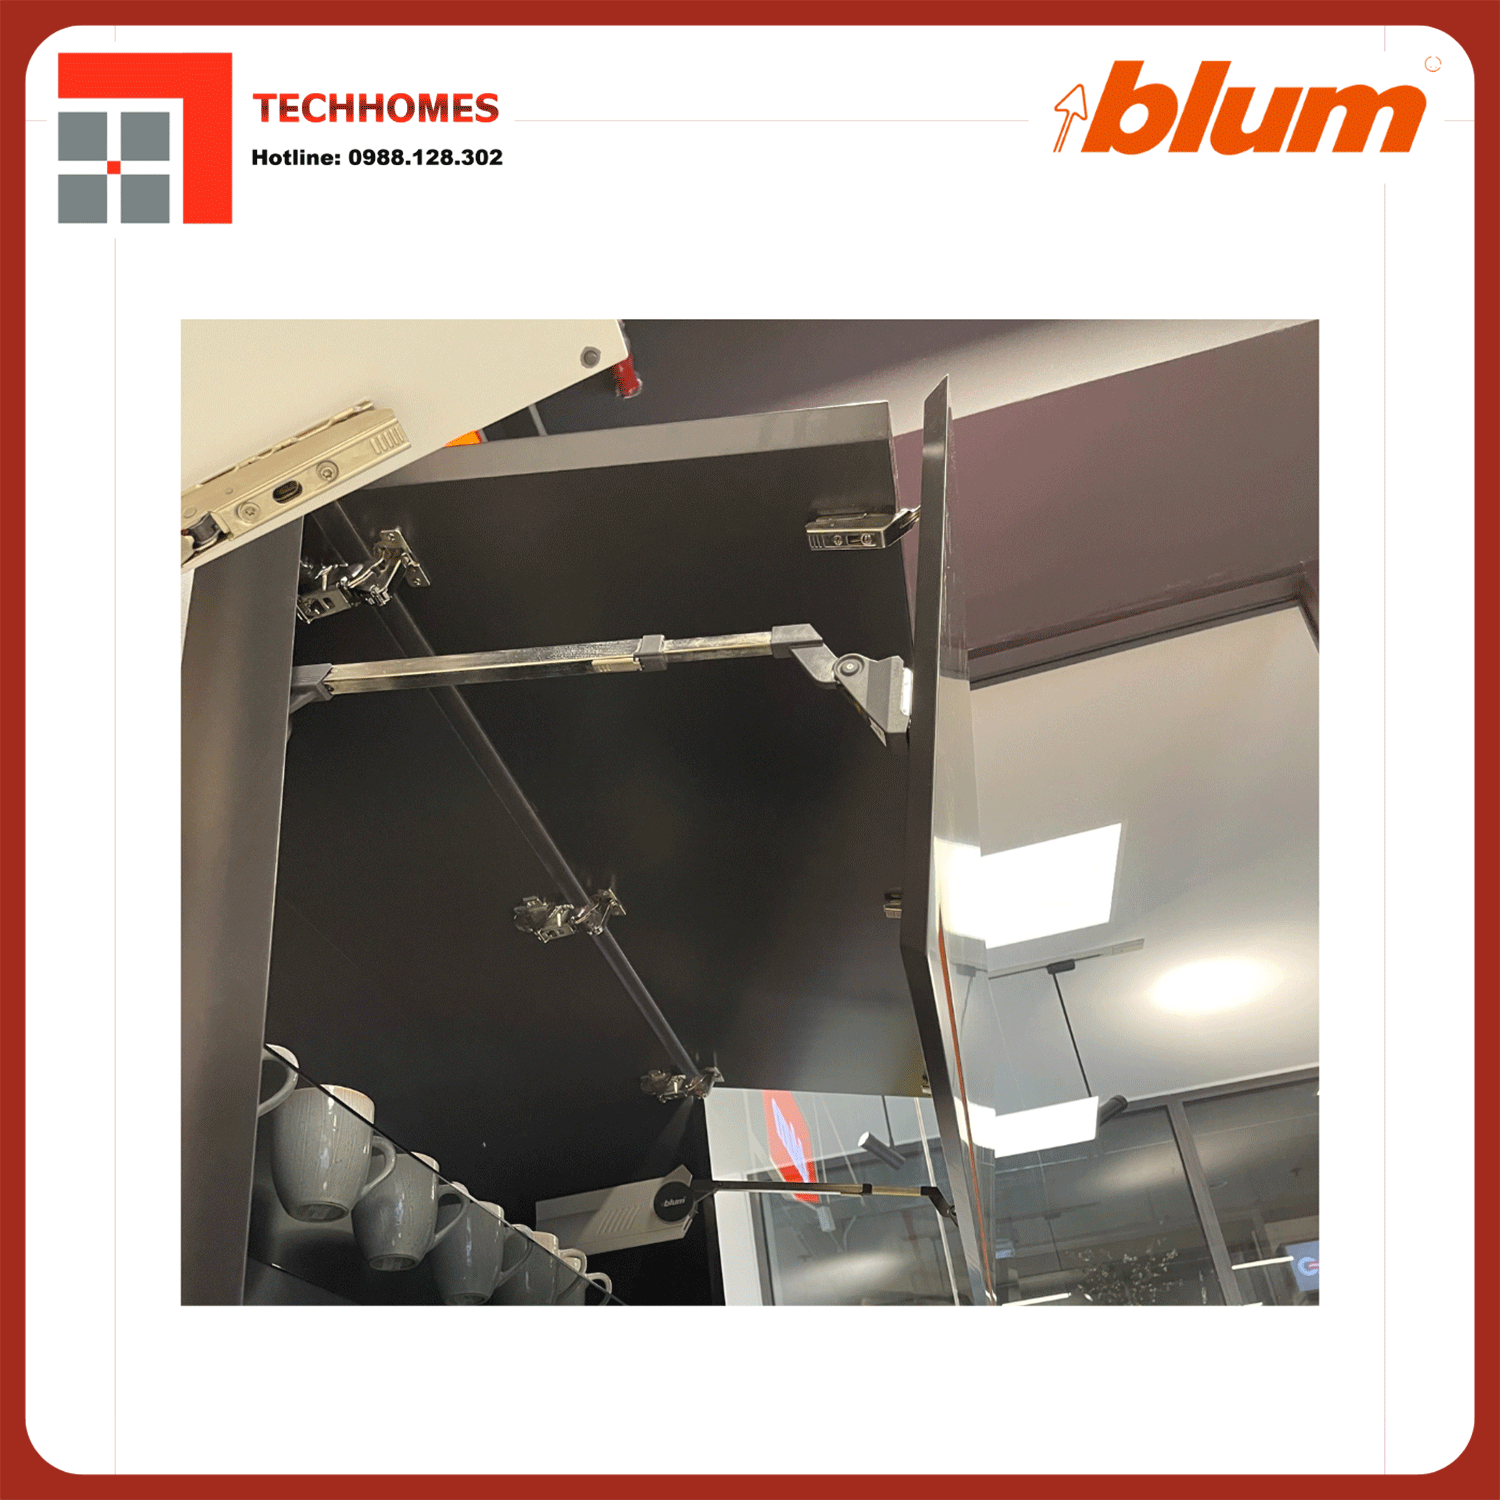 TAY NÂNG BLUM HF25 trọn bộ tay nâng Blum f25 nhập khẩu chính hãng Áo  - blum f25